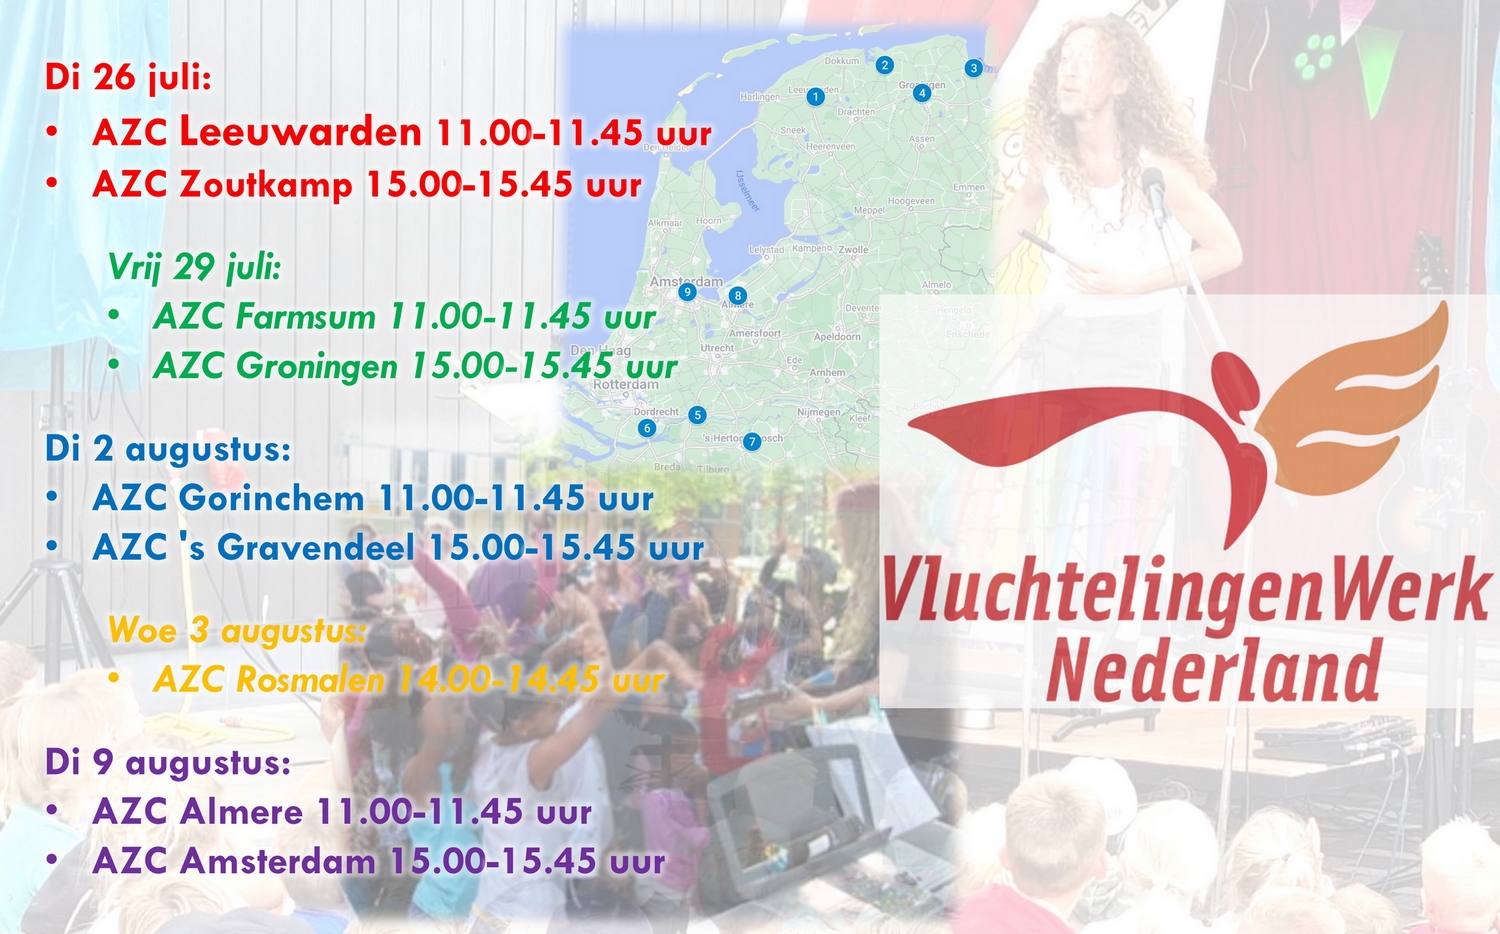 Tijl op AZC tournee namens Vluchtelingenwerk NL